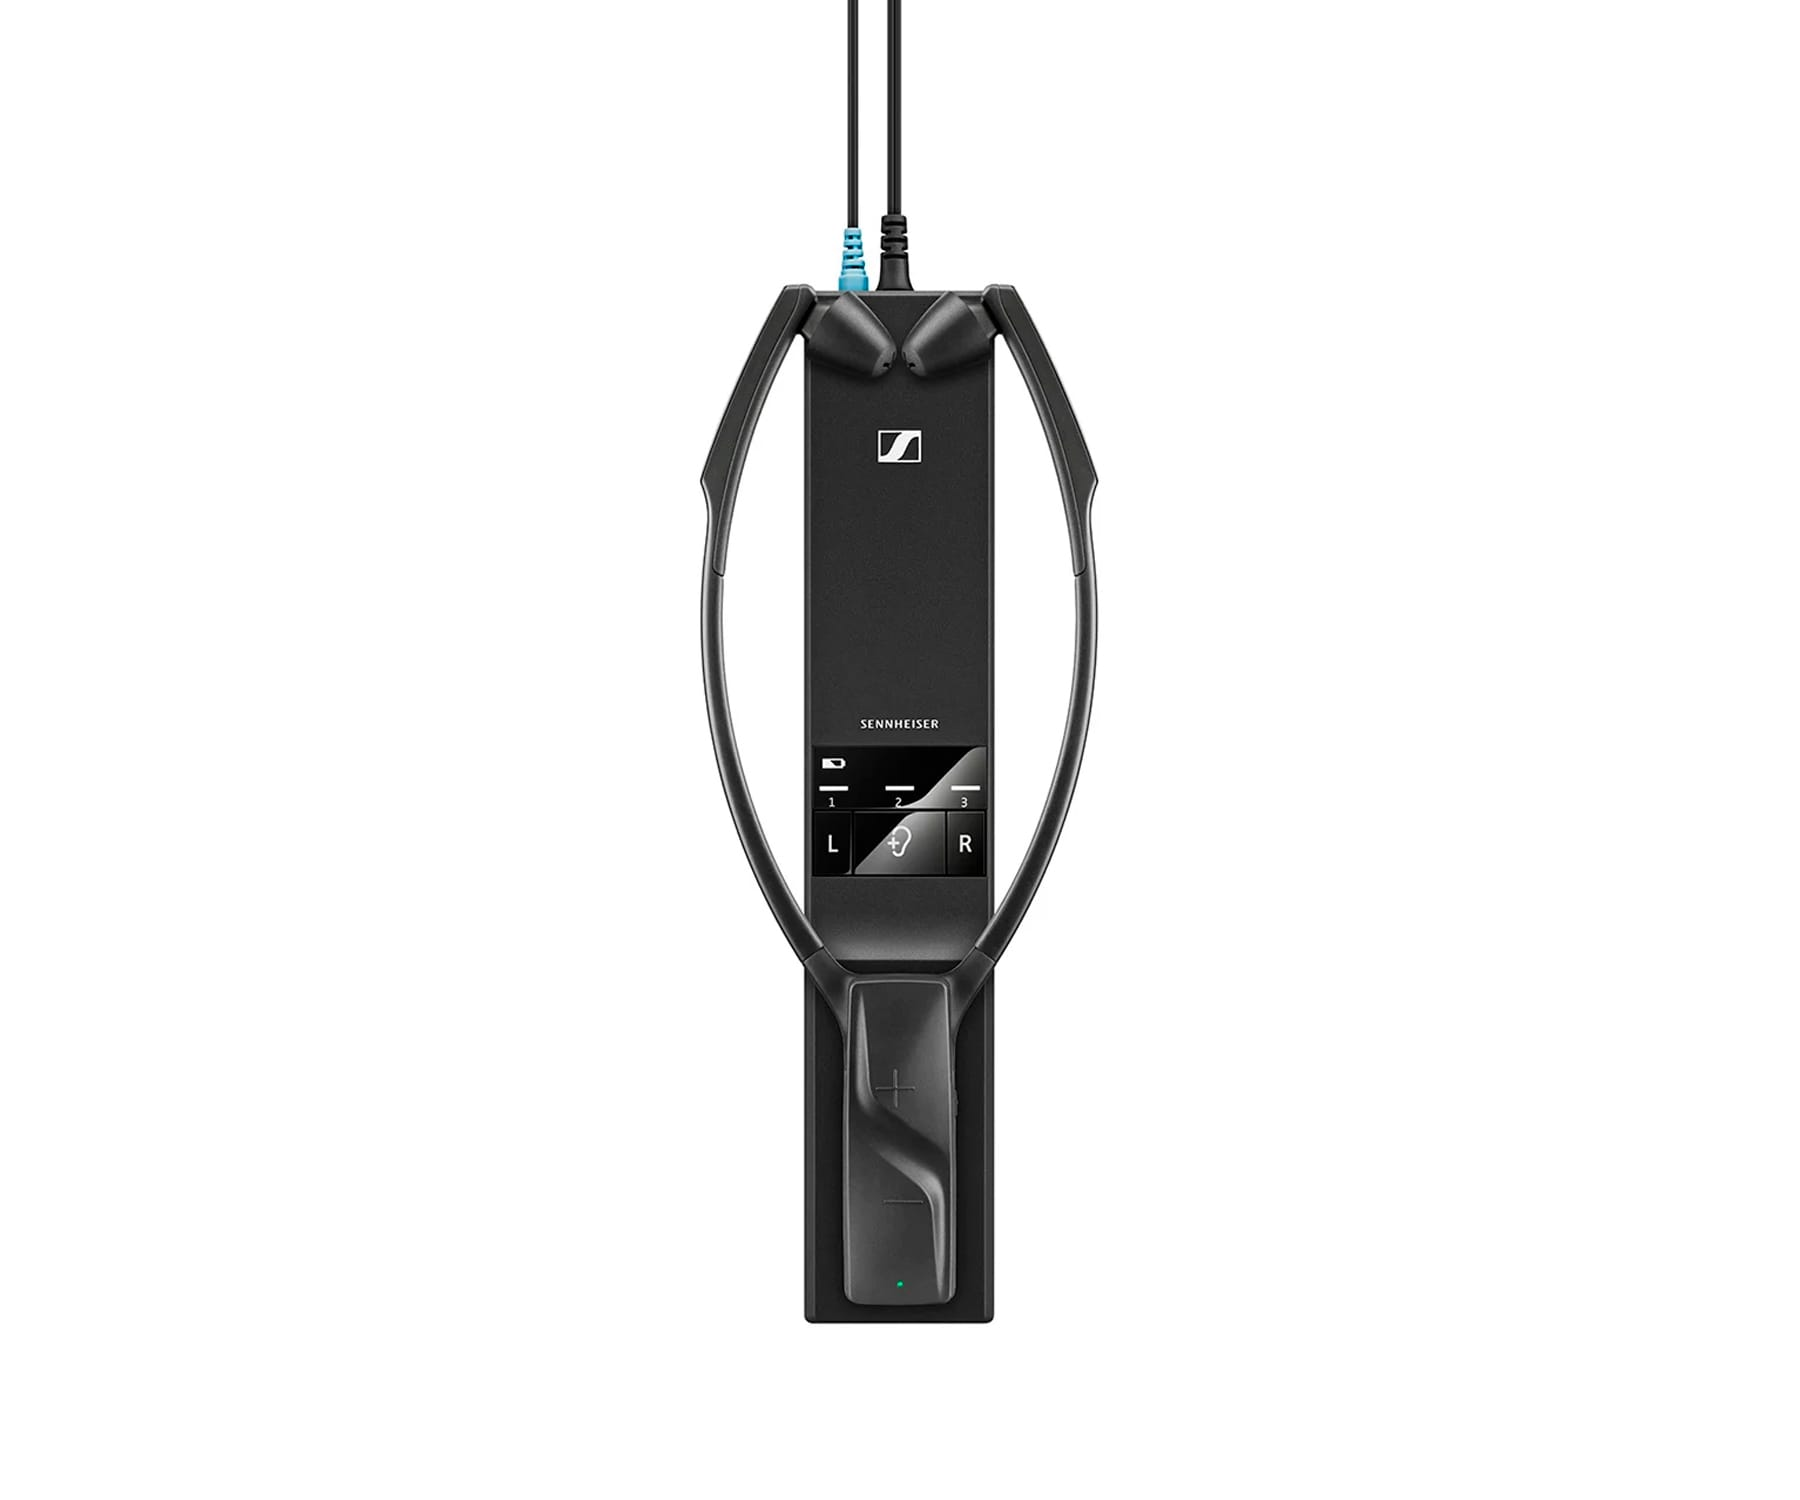 RS 5200, Schwarz SENNHEISER Kopfhörer Kinnbügel Bluetooth